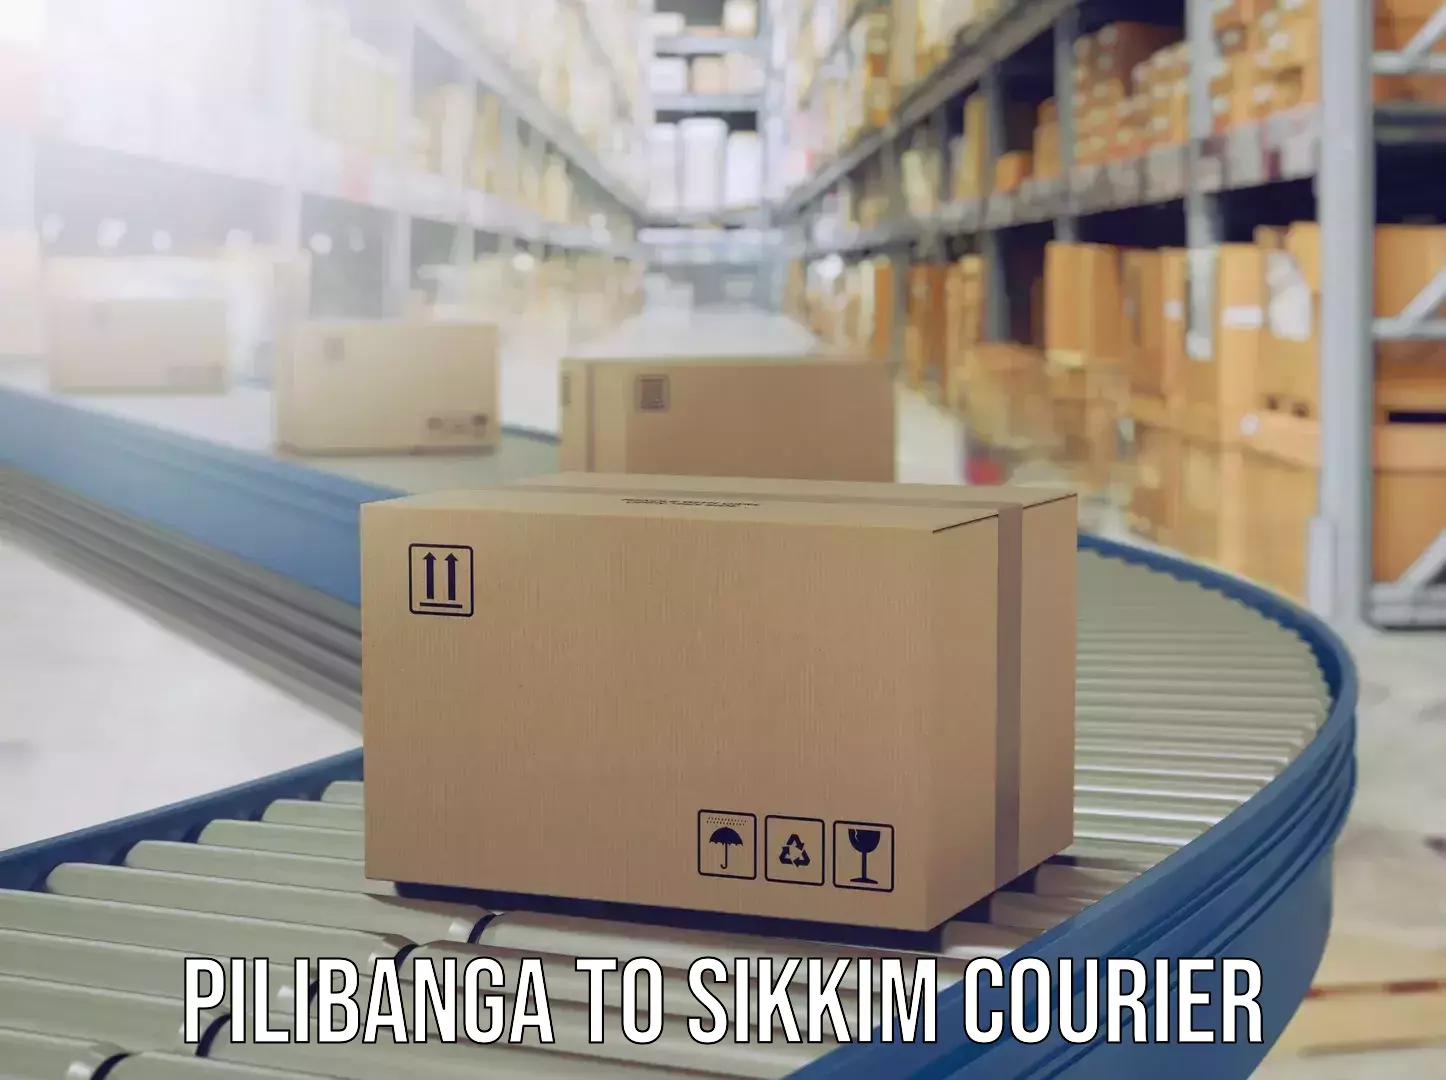 Luggage shipment tracking Pilibanga to South Sikkim